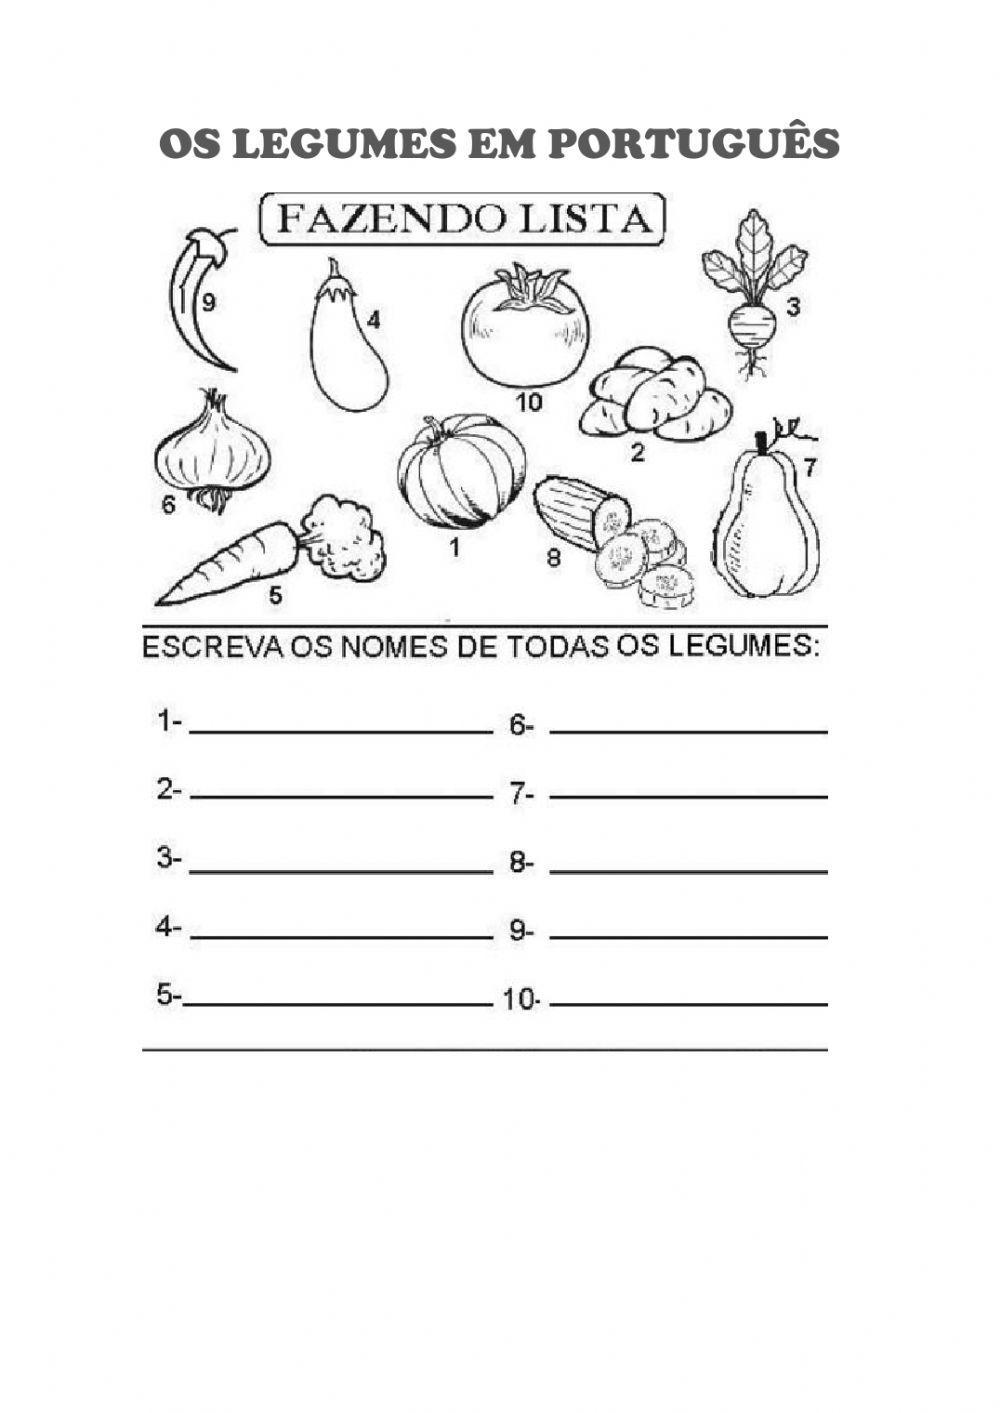 Os legumes em português